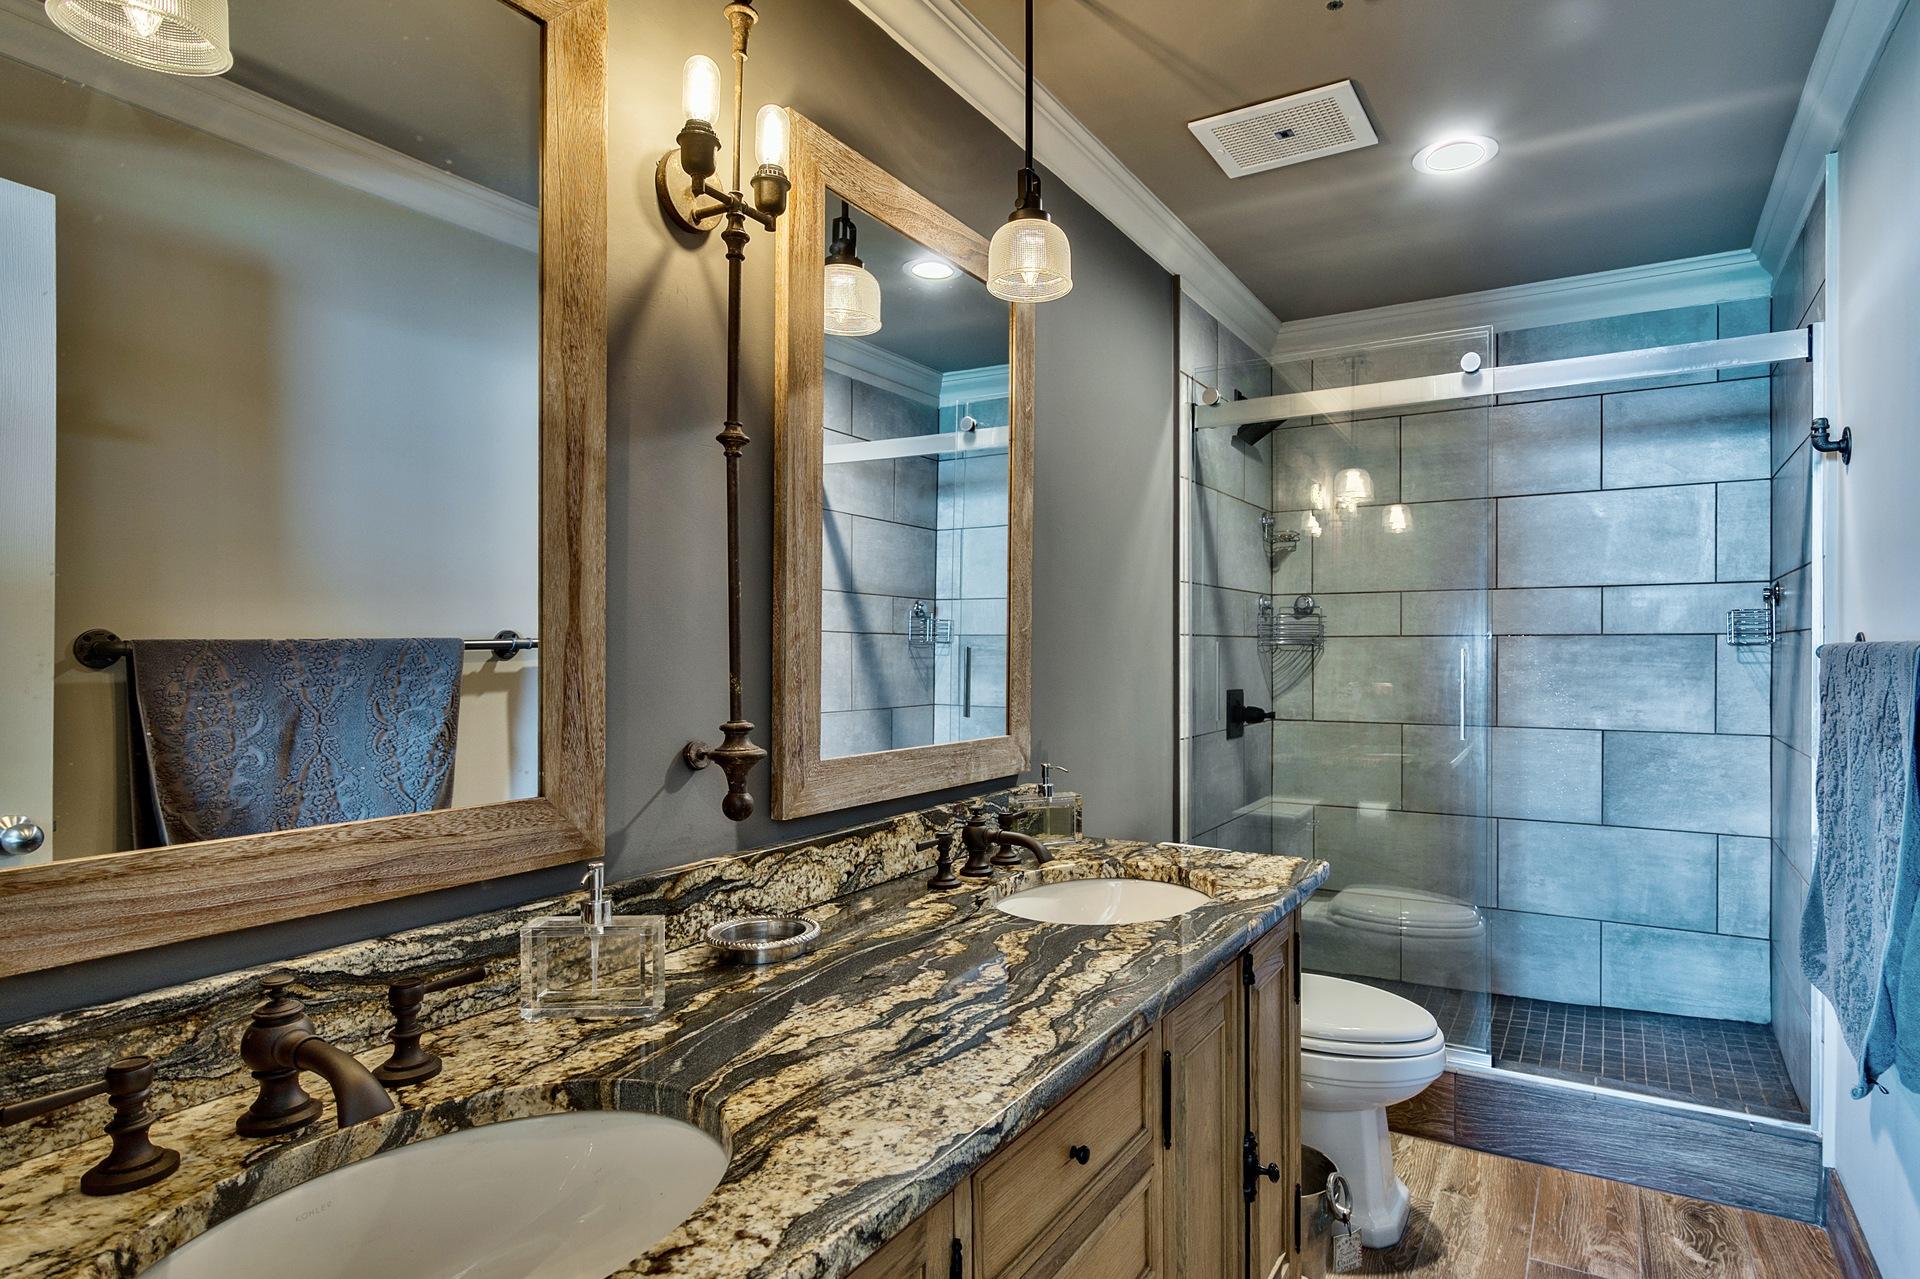 Bathrooms have Restoration Hardware vanities and fixtures.